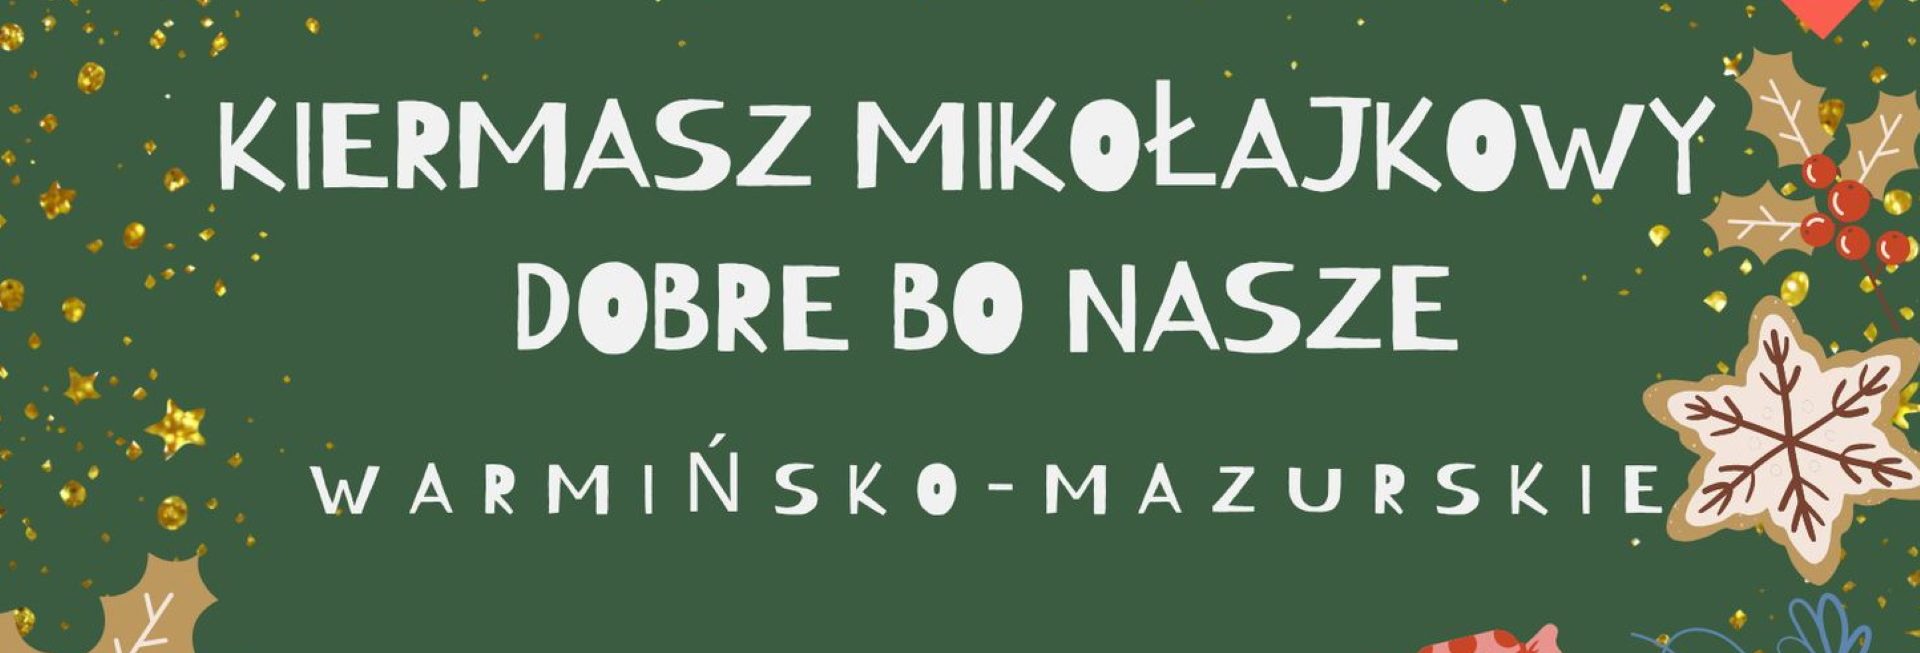 Plakat zapraszający do miejscowości Tomaszkowo w gminie Stawiguda na Kiermasz Mikołajkowy "Dobre bo Nasze" Tomaszkowo 2022.